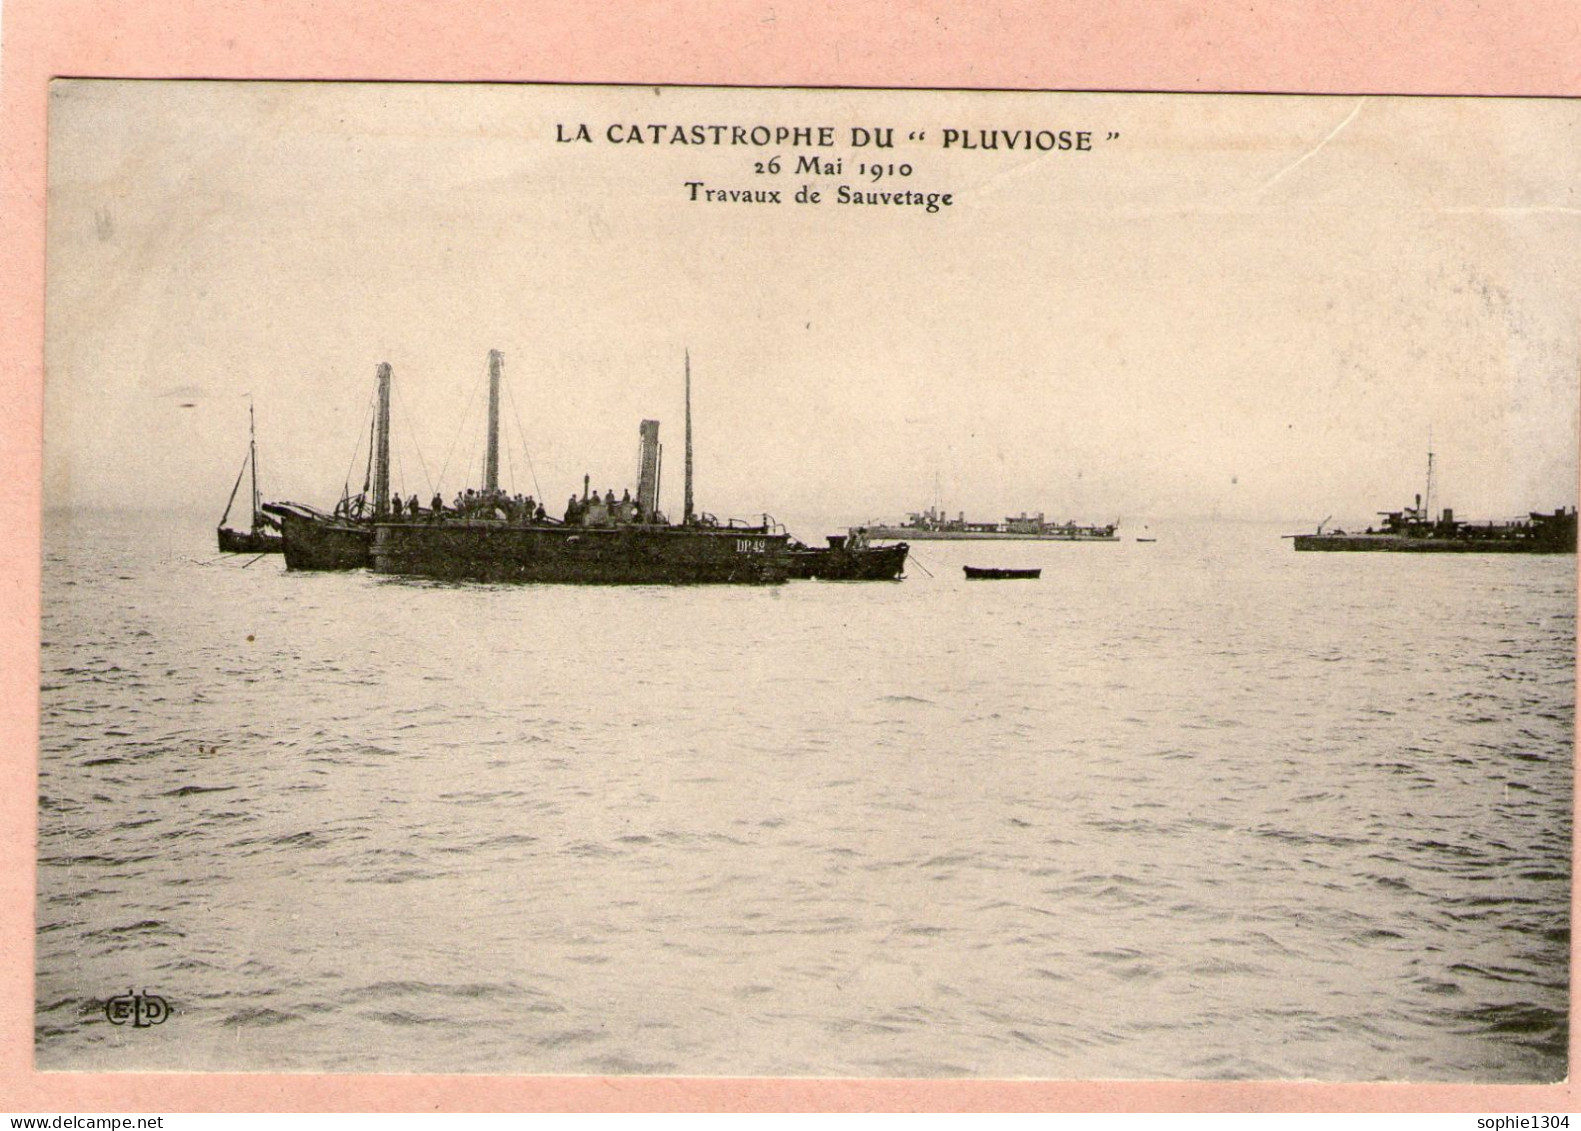 LA CATASTROPHE DU "PLUVIOSE" - 26 MAI 1910 - Travaux De Sauvetage - - Sous-marins